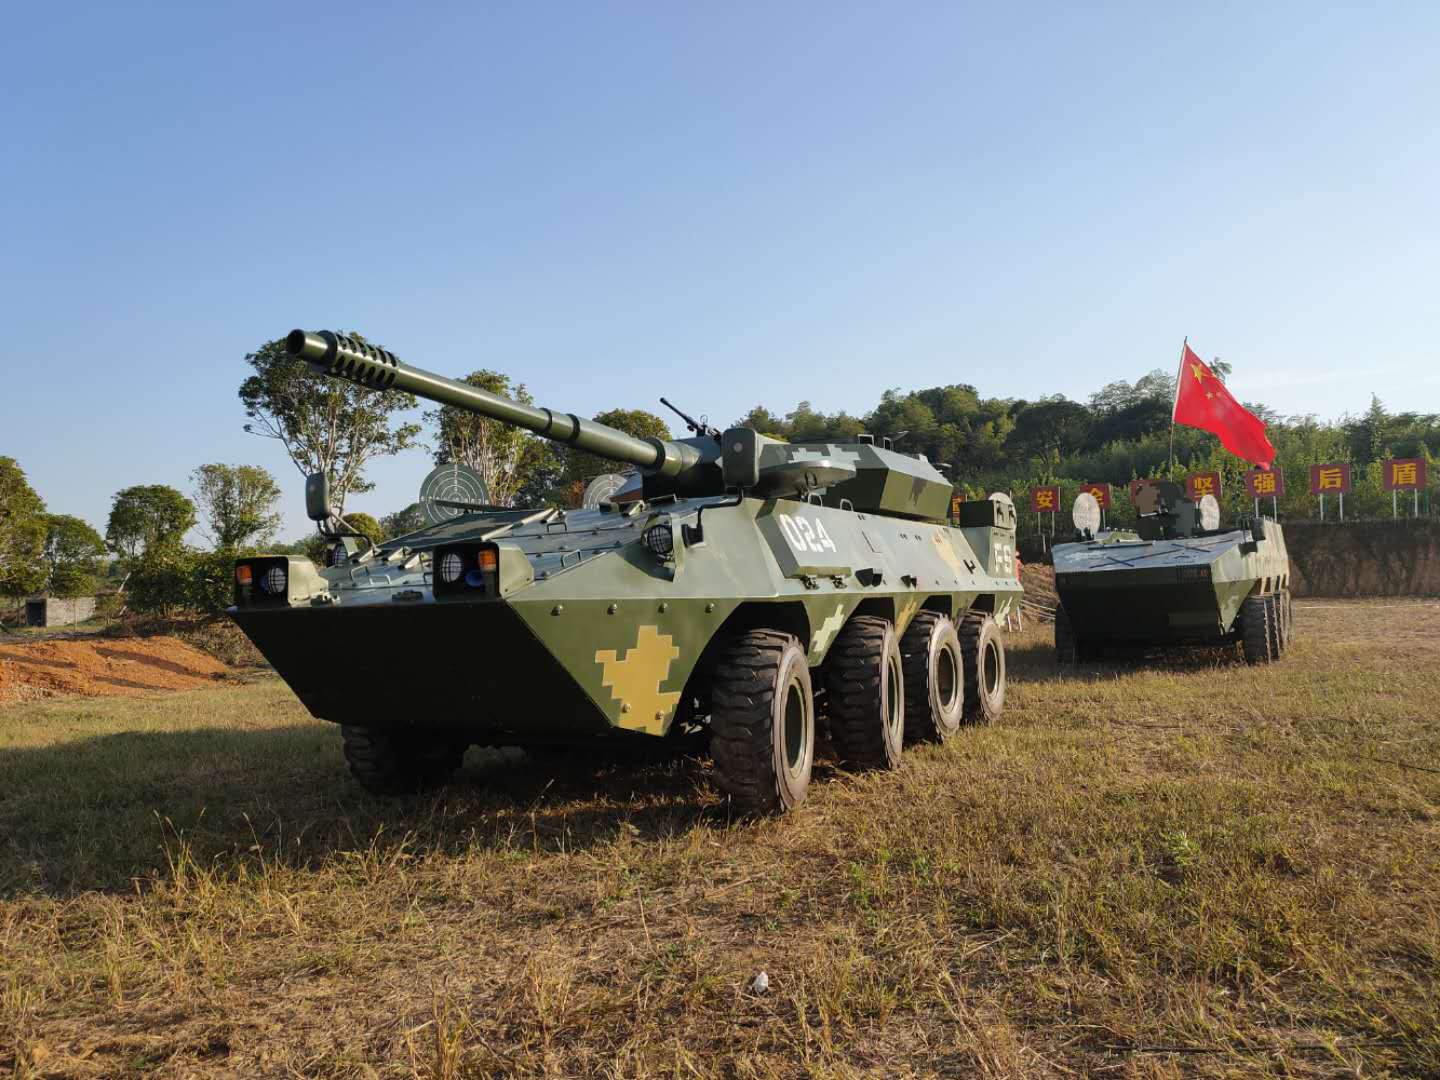 军事模型 大型军模设备 装甲车模型展览装备1